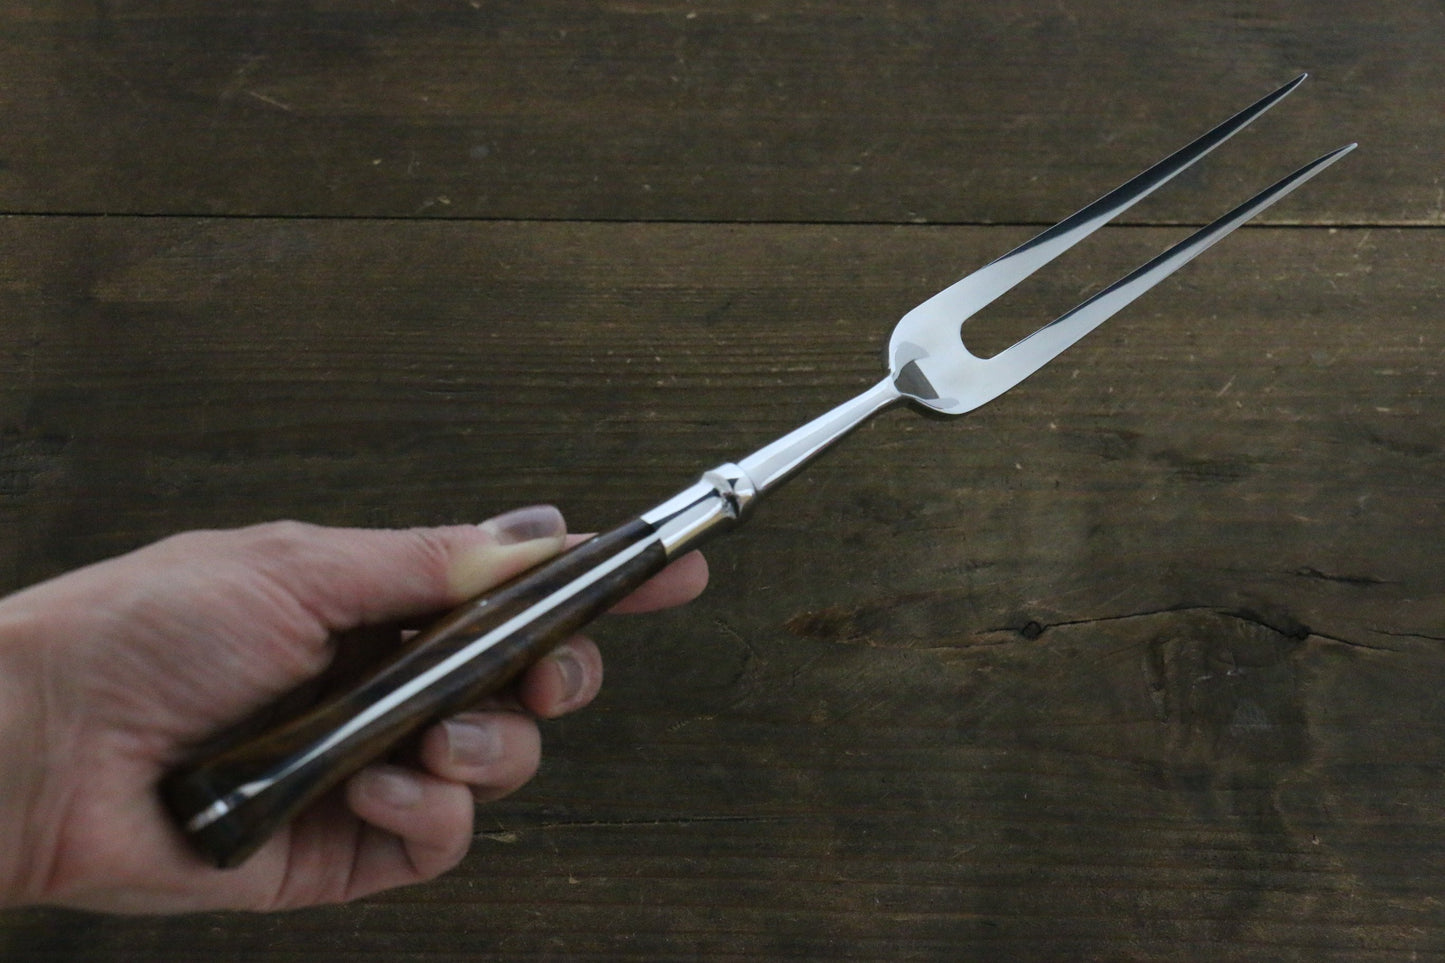 Sakai Takayuki Stainless Carving Knife & Fork Set - Japanny - Best Japanese Knife